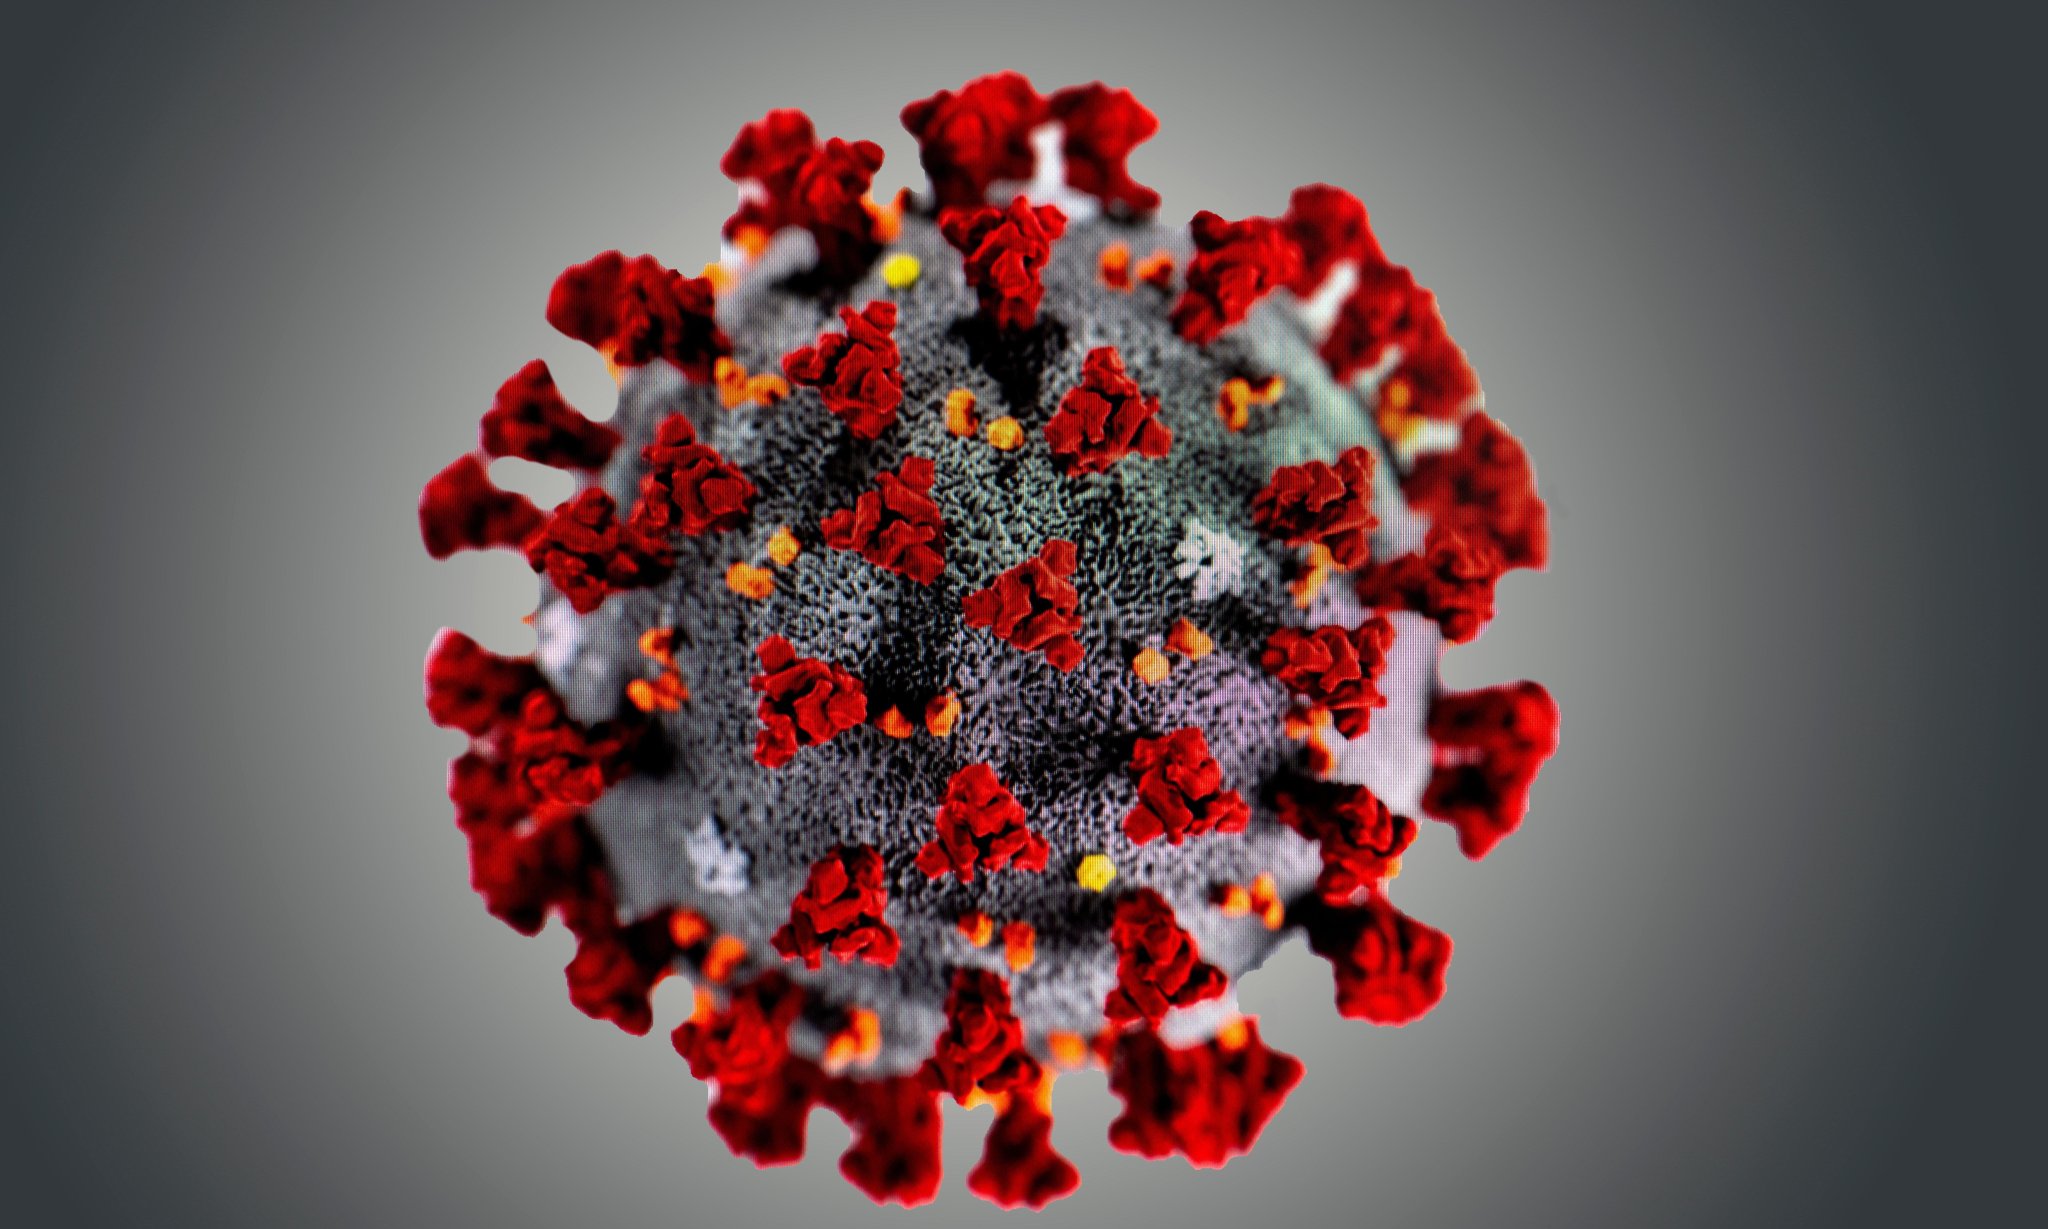 Coronavirus: Latest News - cover